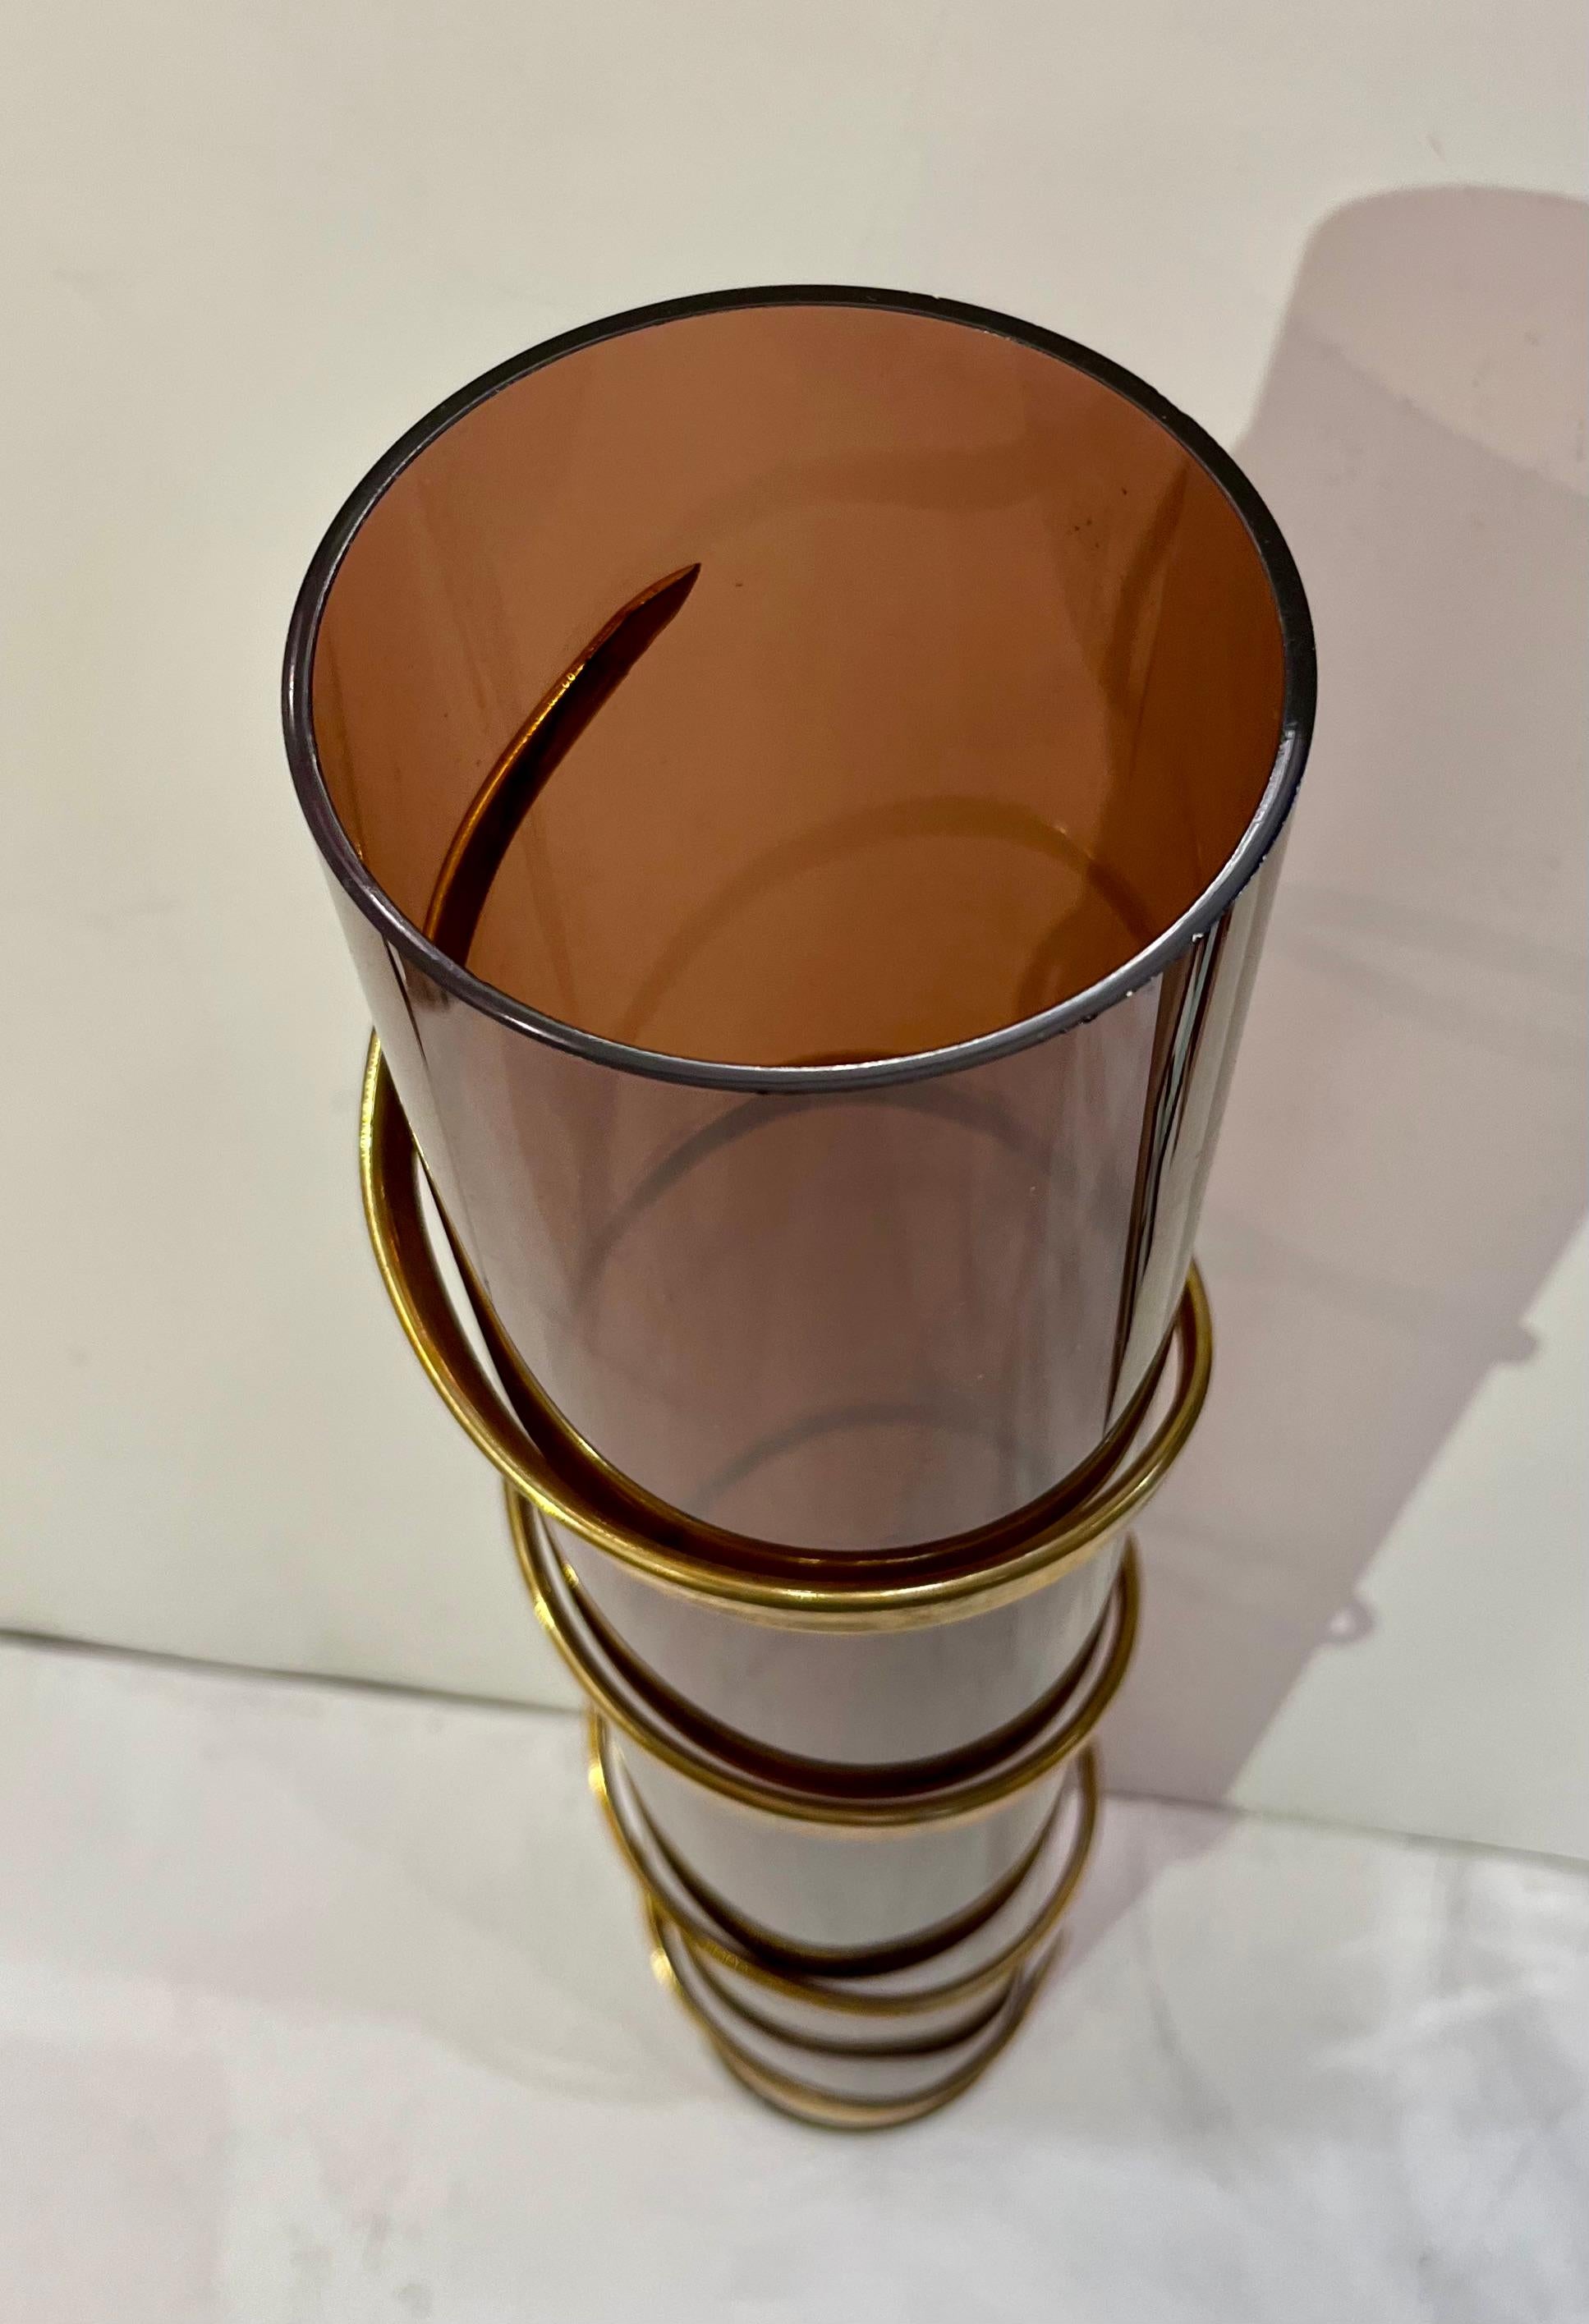 Vintage Mid-Century Modern Italian Design zylindrische Skulptur Vase, Romeo Rega zugeschrieben, hoch und schlank, die organische Körper in transparentem braunen Acryl ist mit einem Messing ägyptischen Stil gewundene Spirale auf der Außenseite